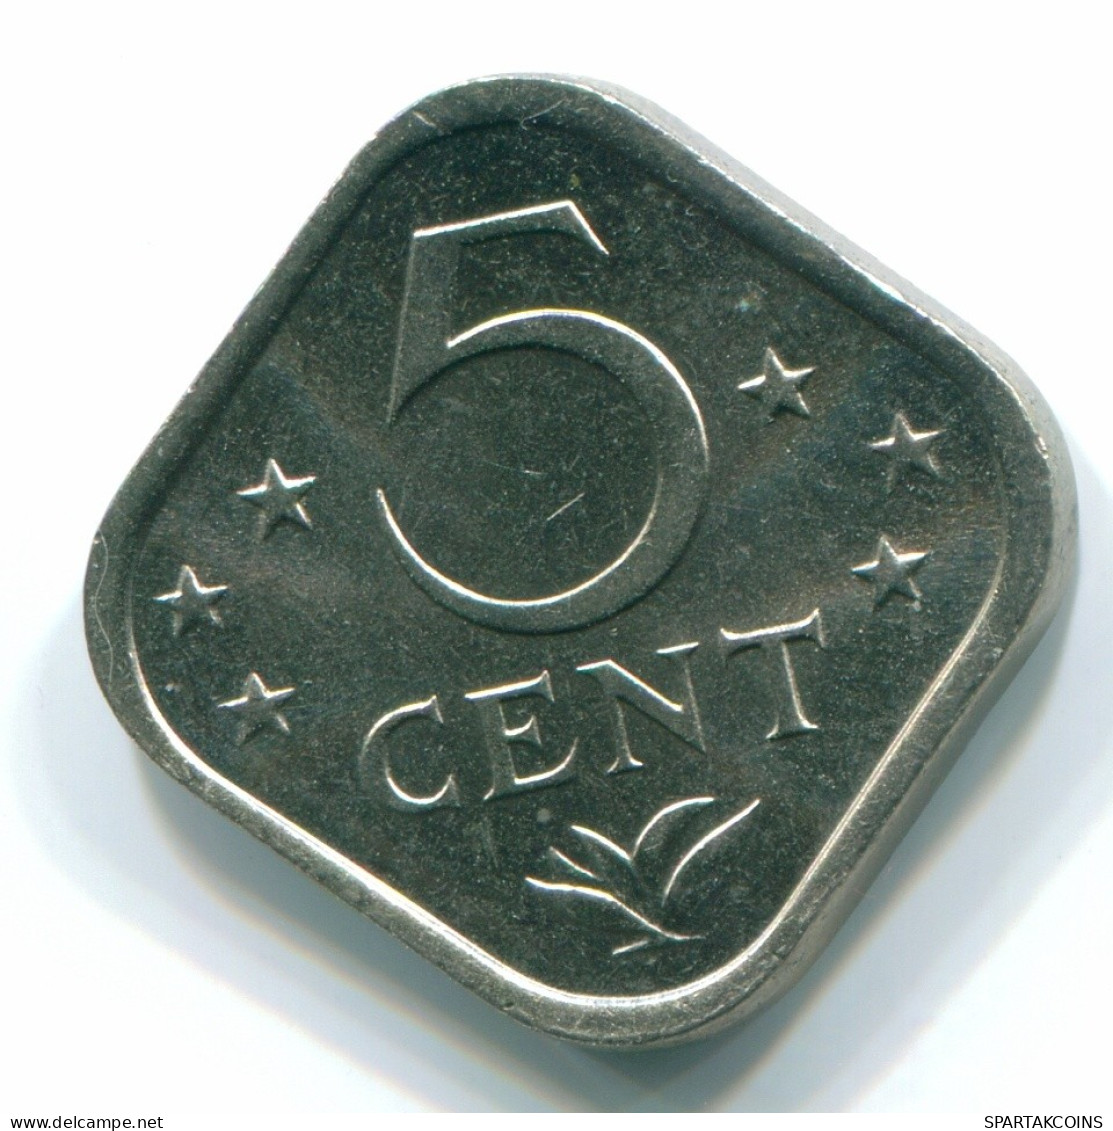 5 CENTS 1977 NETHERLANDS ANTILLES Nickel Colonial Coin #S12274.U.A - Niederländische Antillen